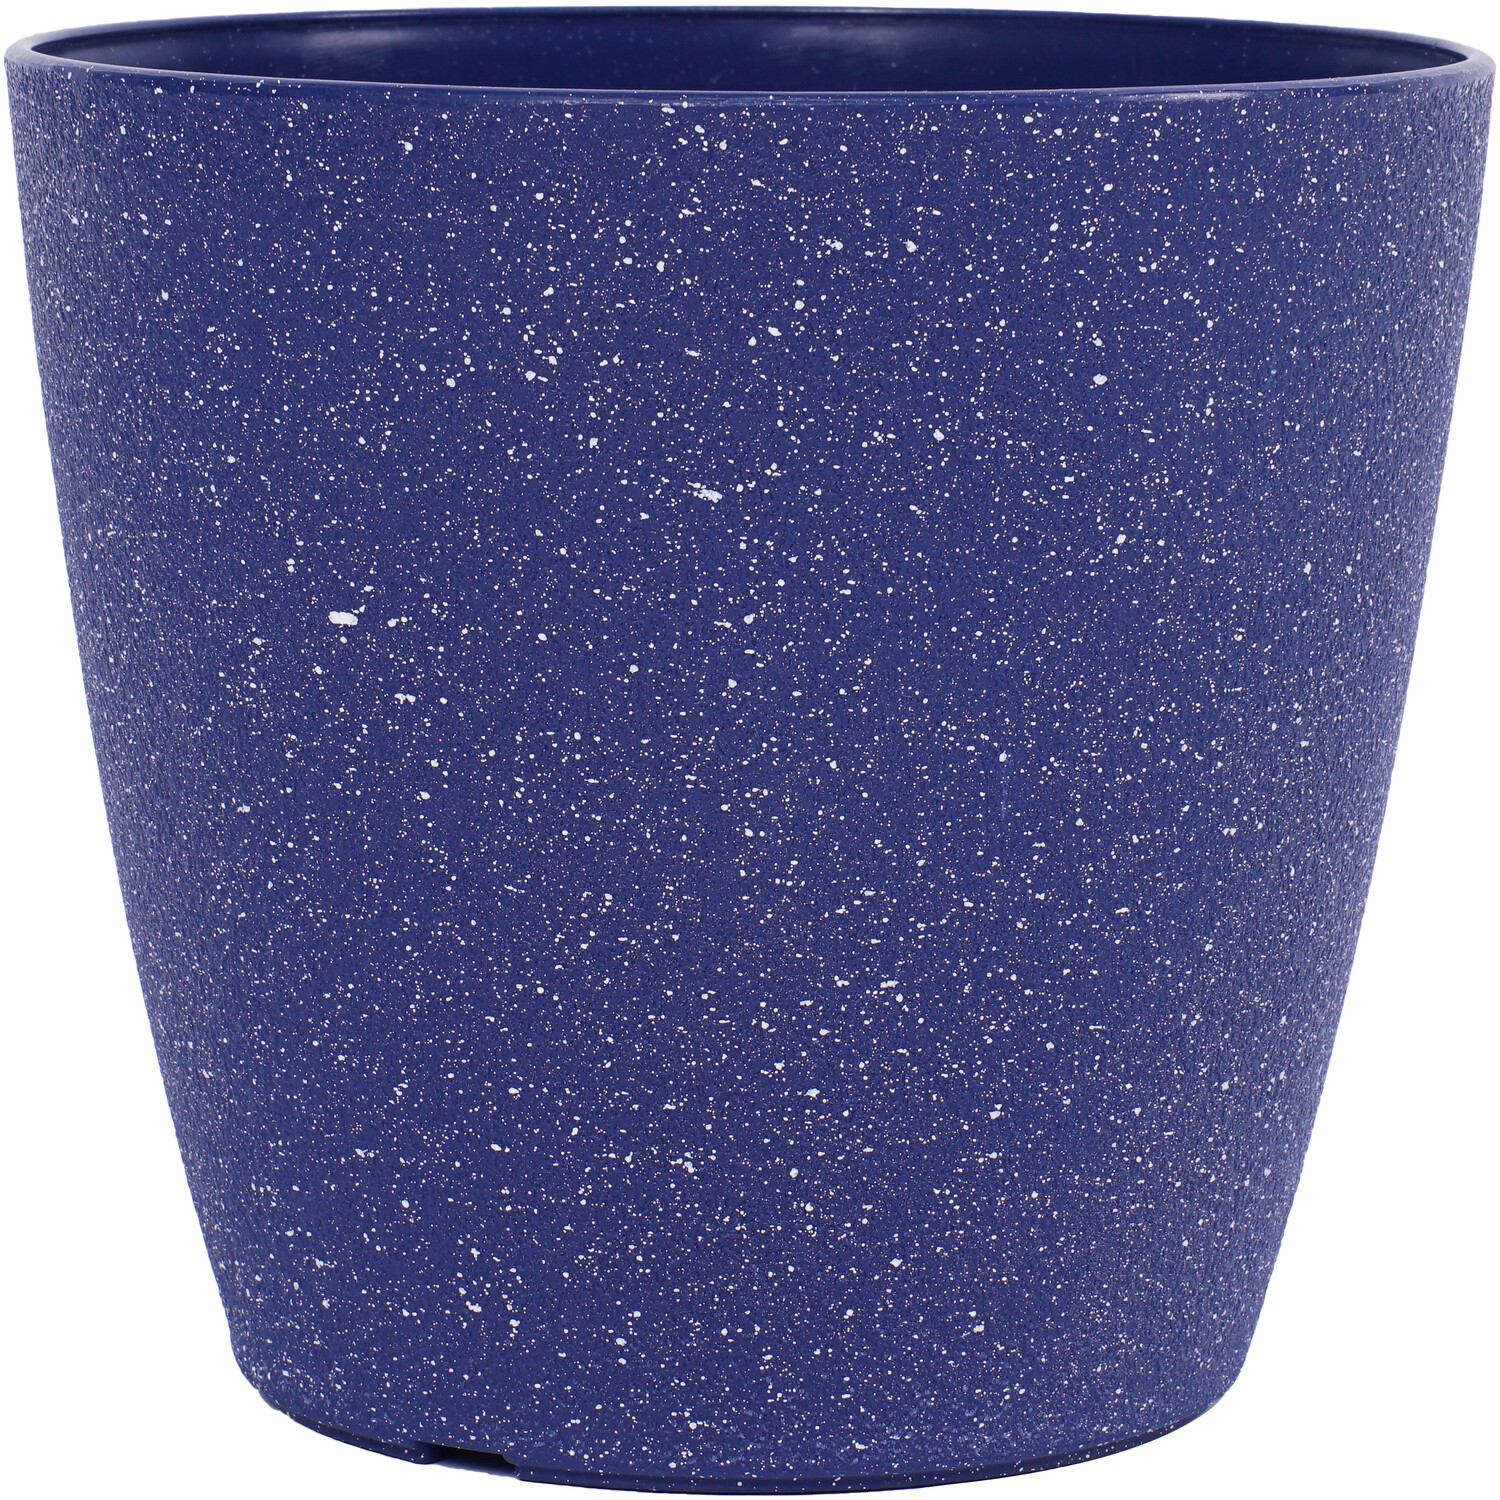 Blue Textured Plastic Plant Pot 18cm Image 2